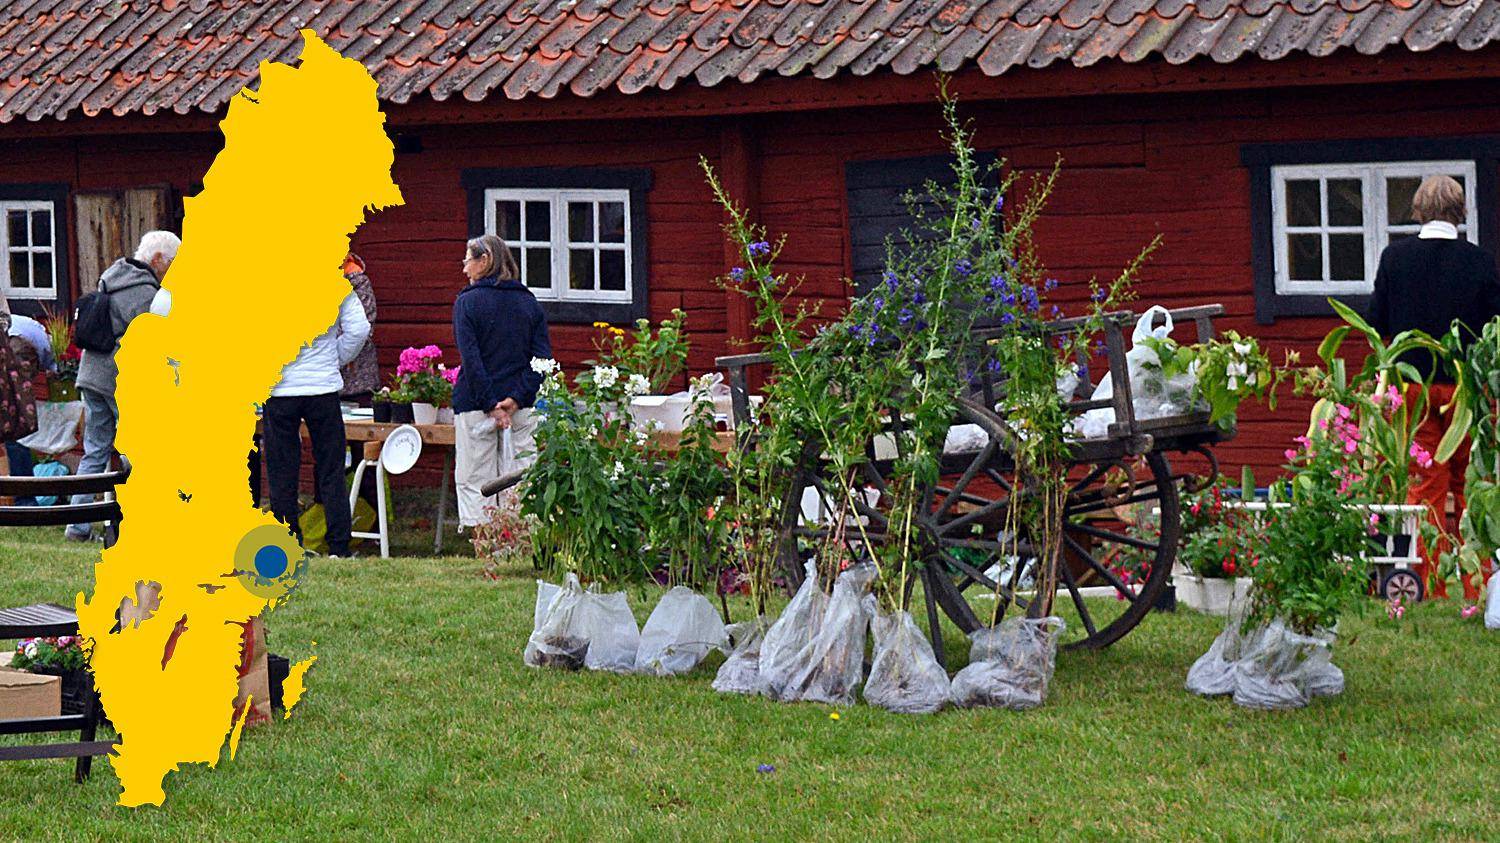 Bloemen op een groen gazon voor een rood houten huis. Een gele kaart van Zweden met een markering die de locatie van Björksta aangeeft.